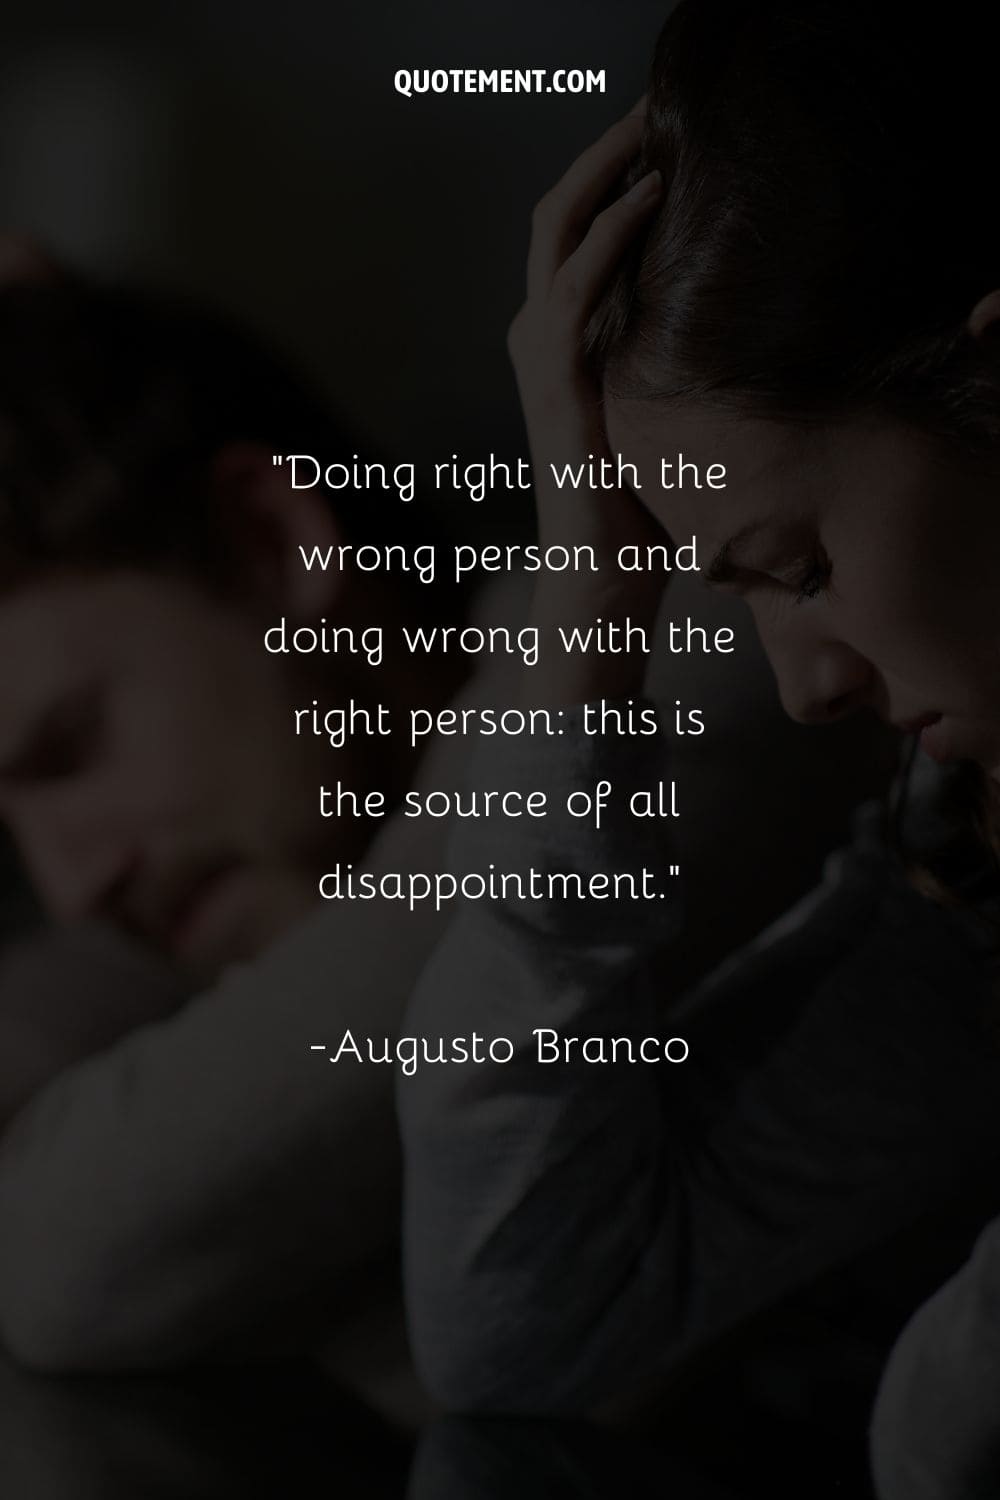 Hacer lo correcto con la persona equivocada y hacer lo incorrecto con la persona correcta esta es la fuente de toda decepción